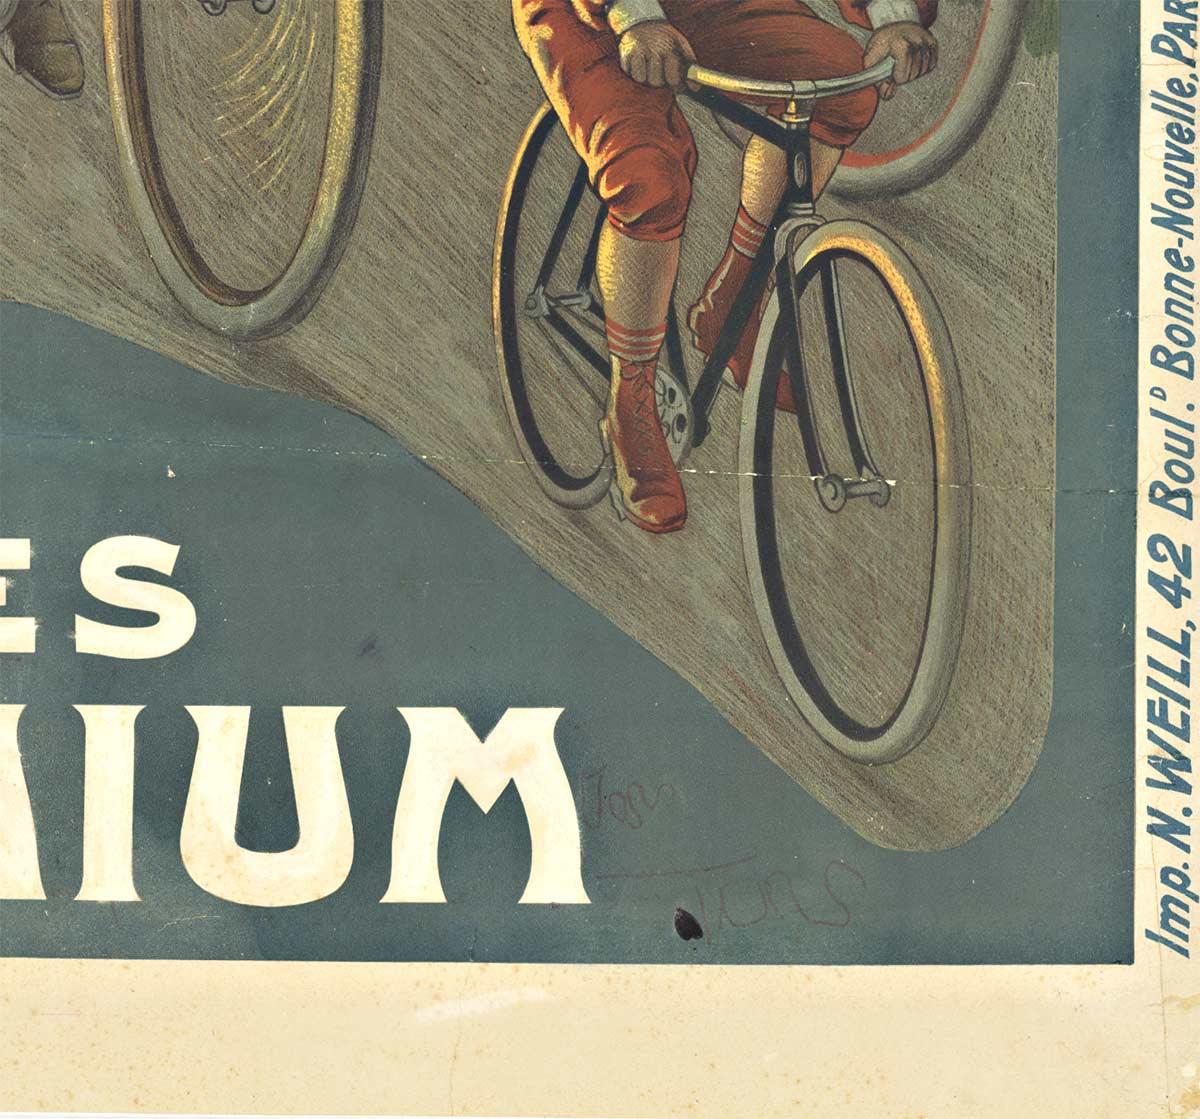 Affiche originale de bicyclette française ancienne Cycles Omnium, datant de la fin des années 1880-1890.   Imprimante :  N. Weill, Paris, France.   Support en lin d'archivage et prêt à être encadré.   Il y avait une zone dans la partie supérieure du